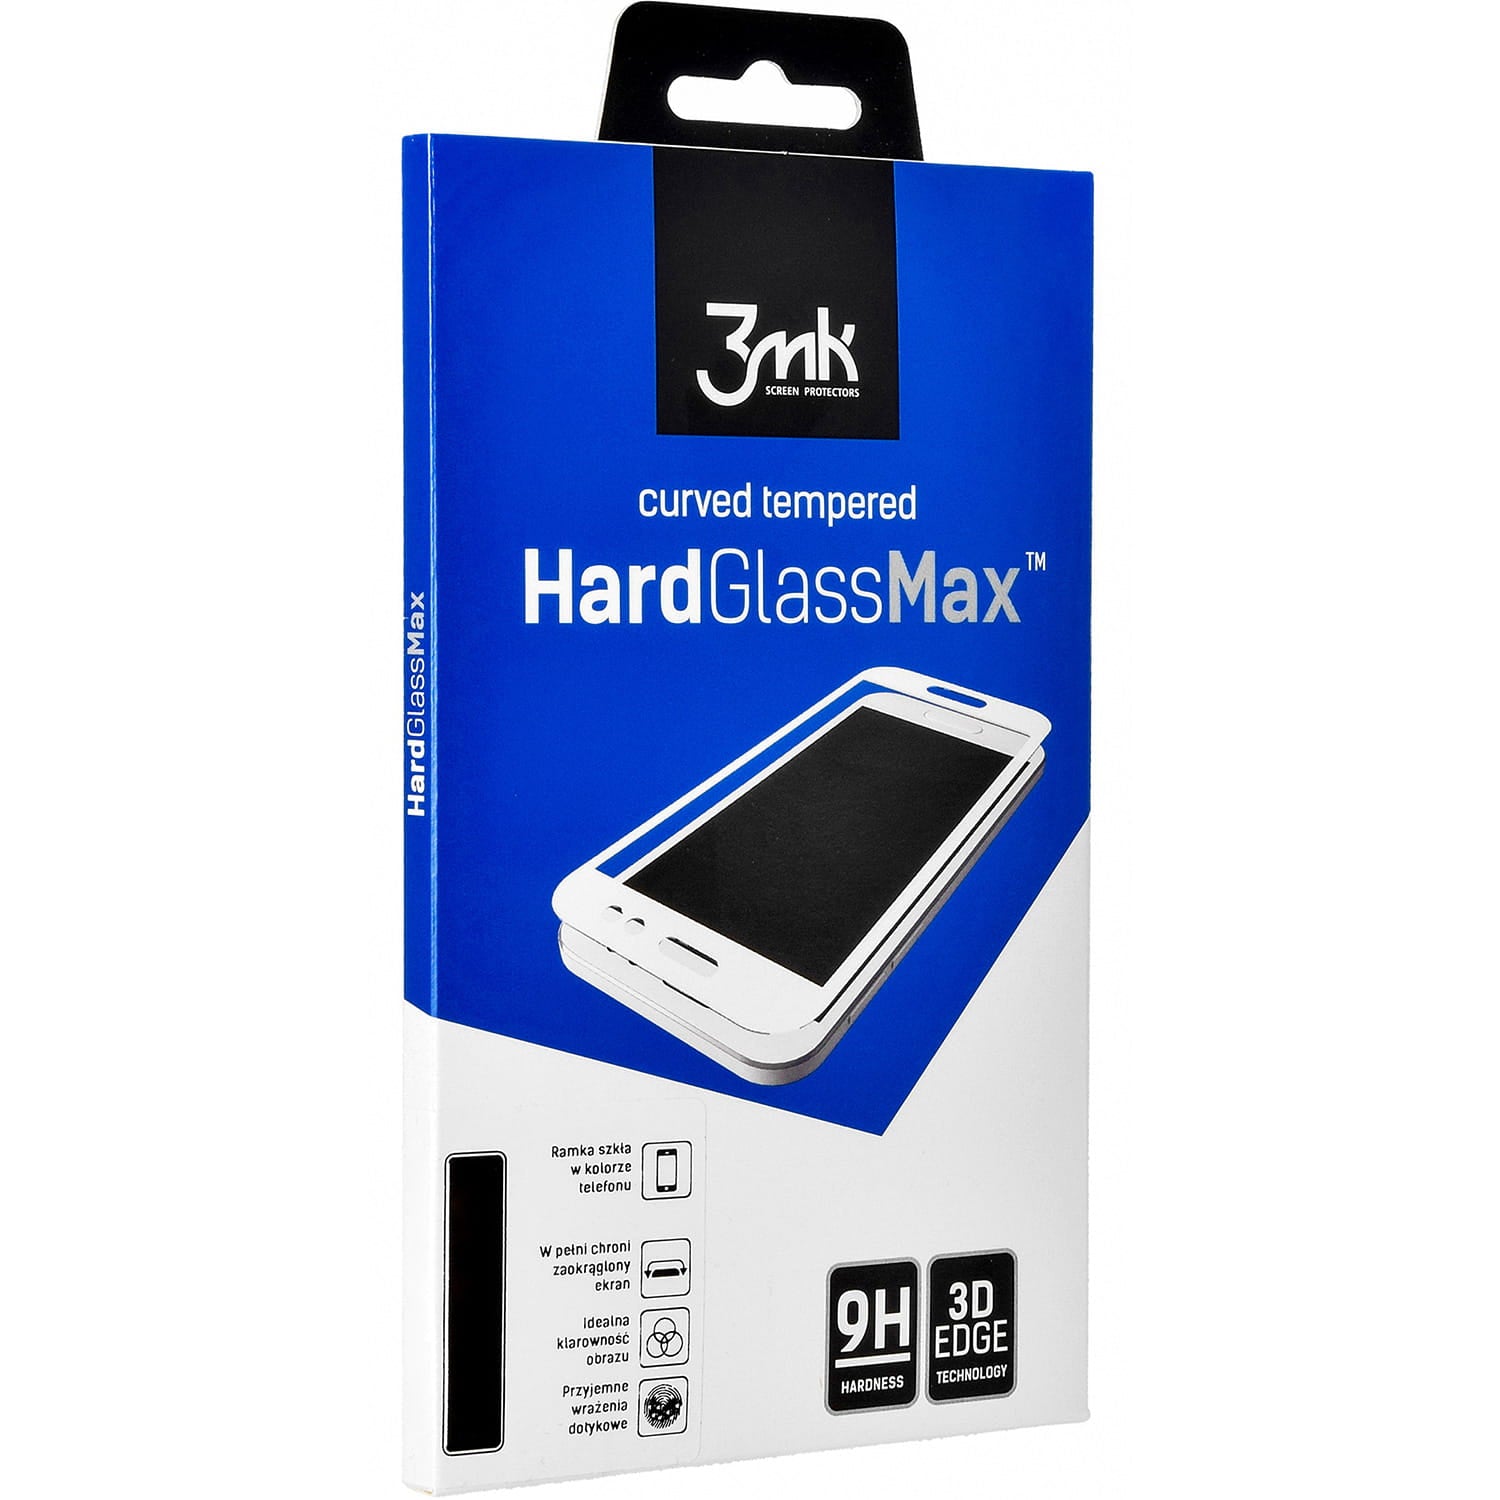 Gehärtetes Glas 3mk HardGlass Max für iPhone 11 Pro / Xs / X schwarzer Rahmen